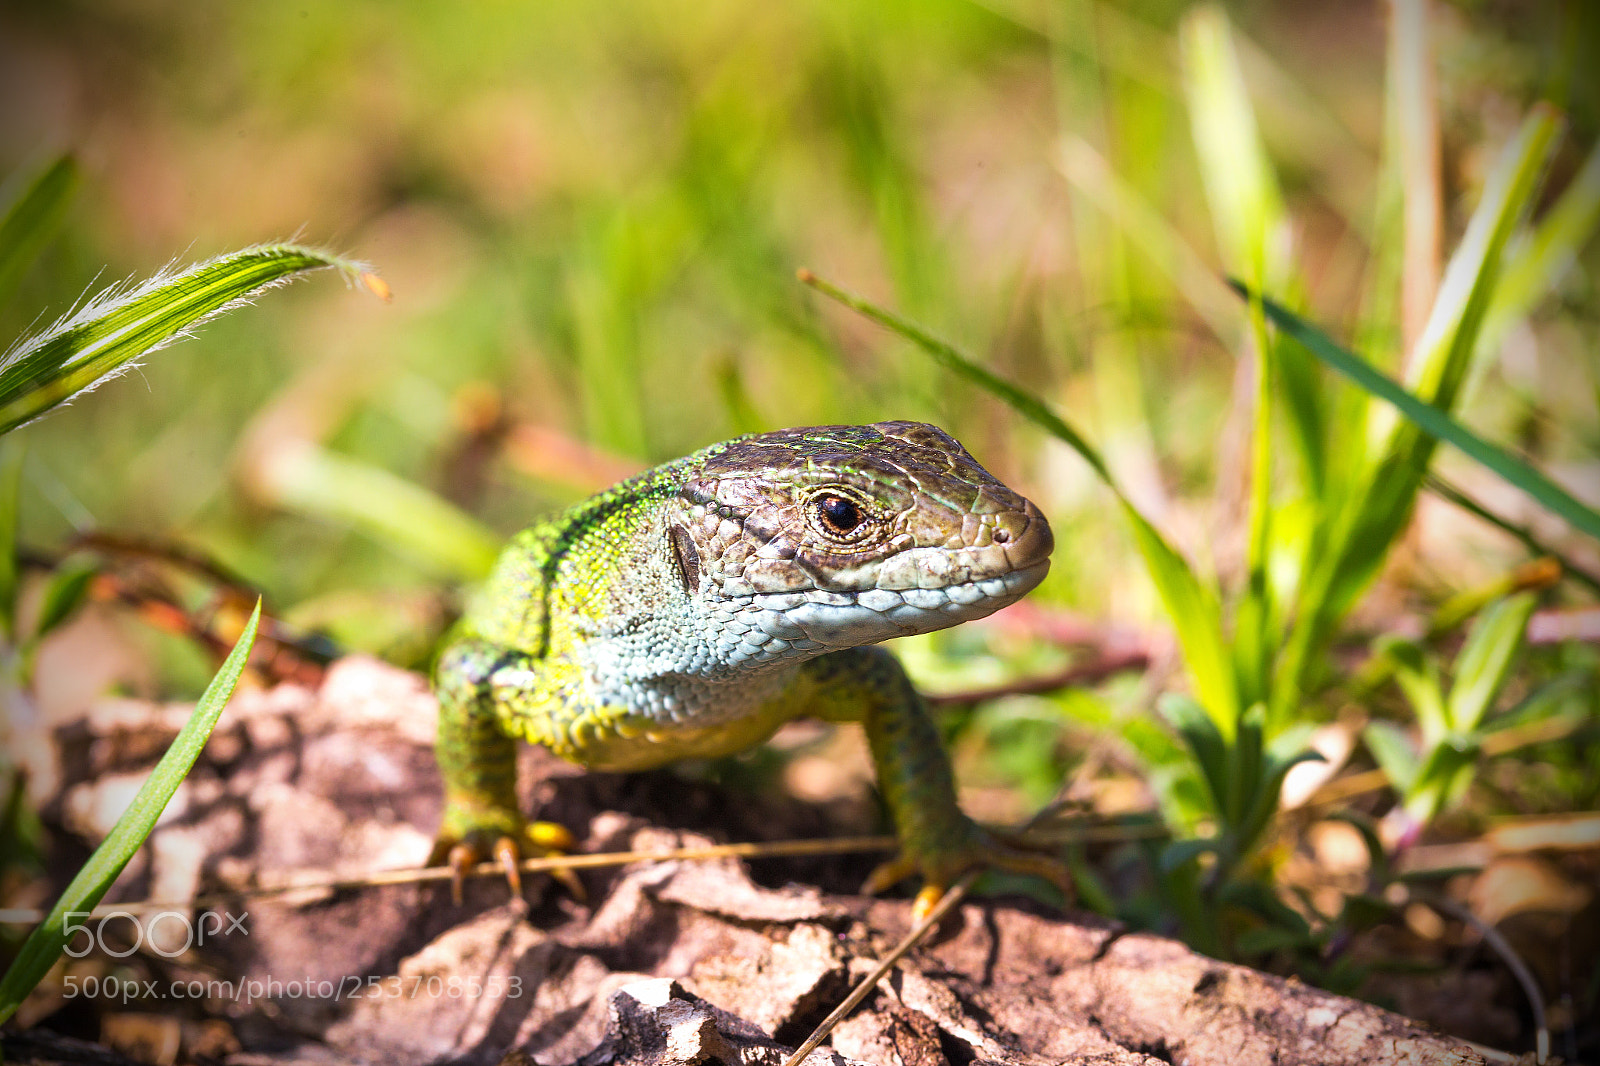 Canon EOS 6D sample photo. Emerald lizard photography